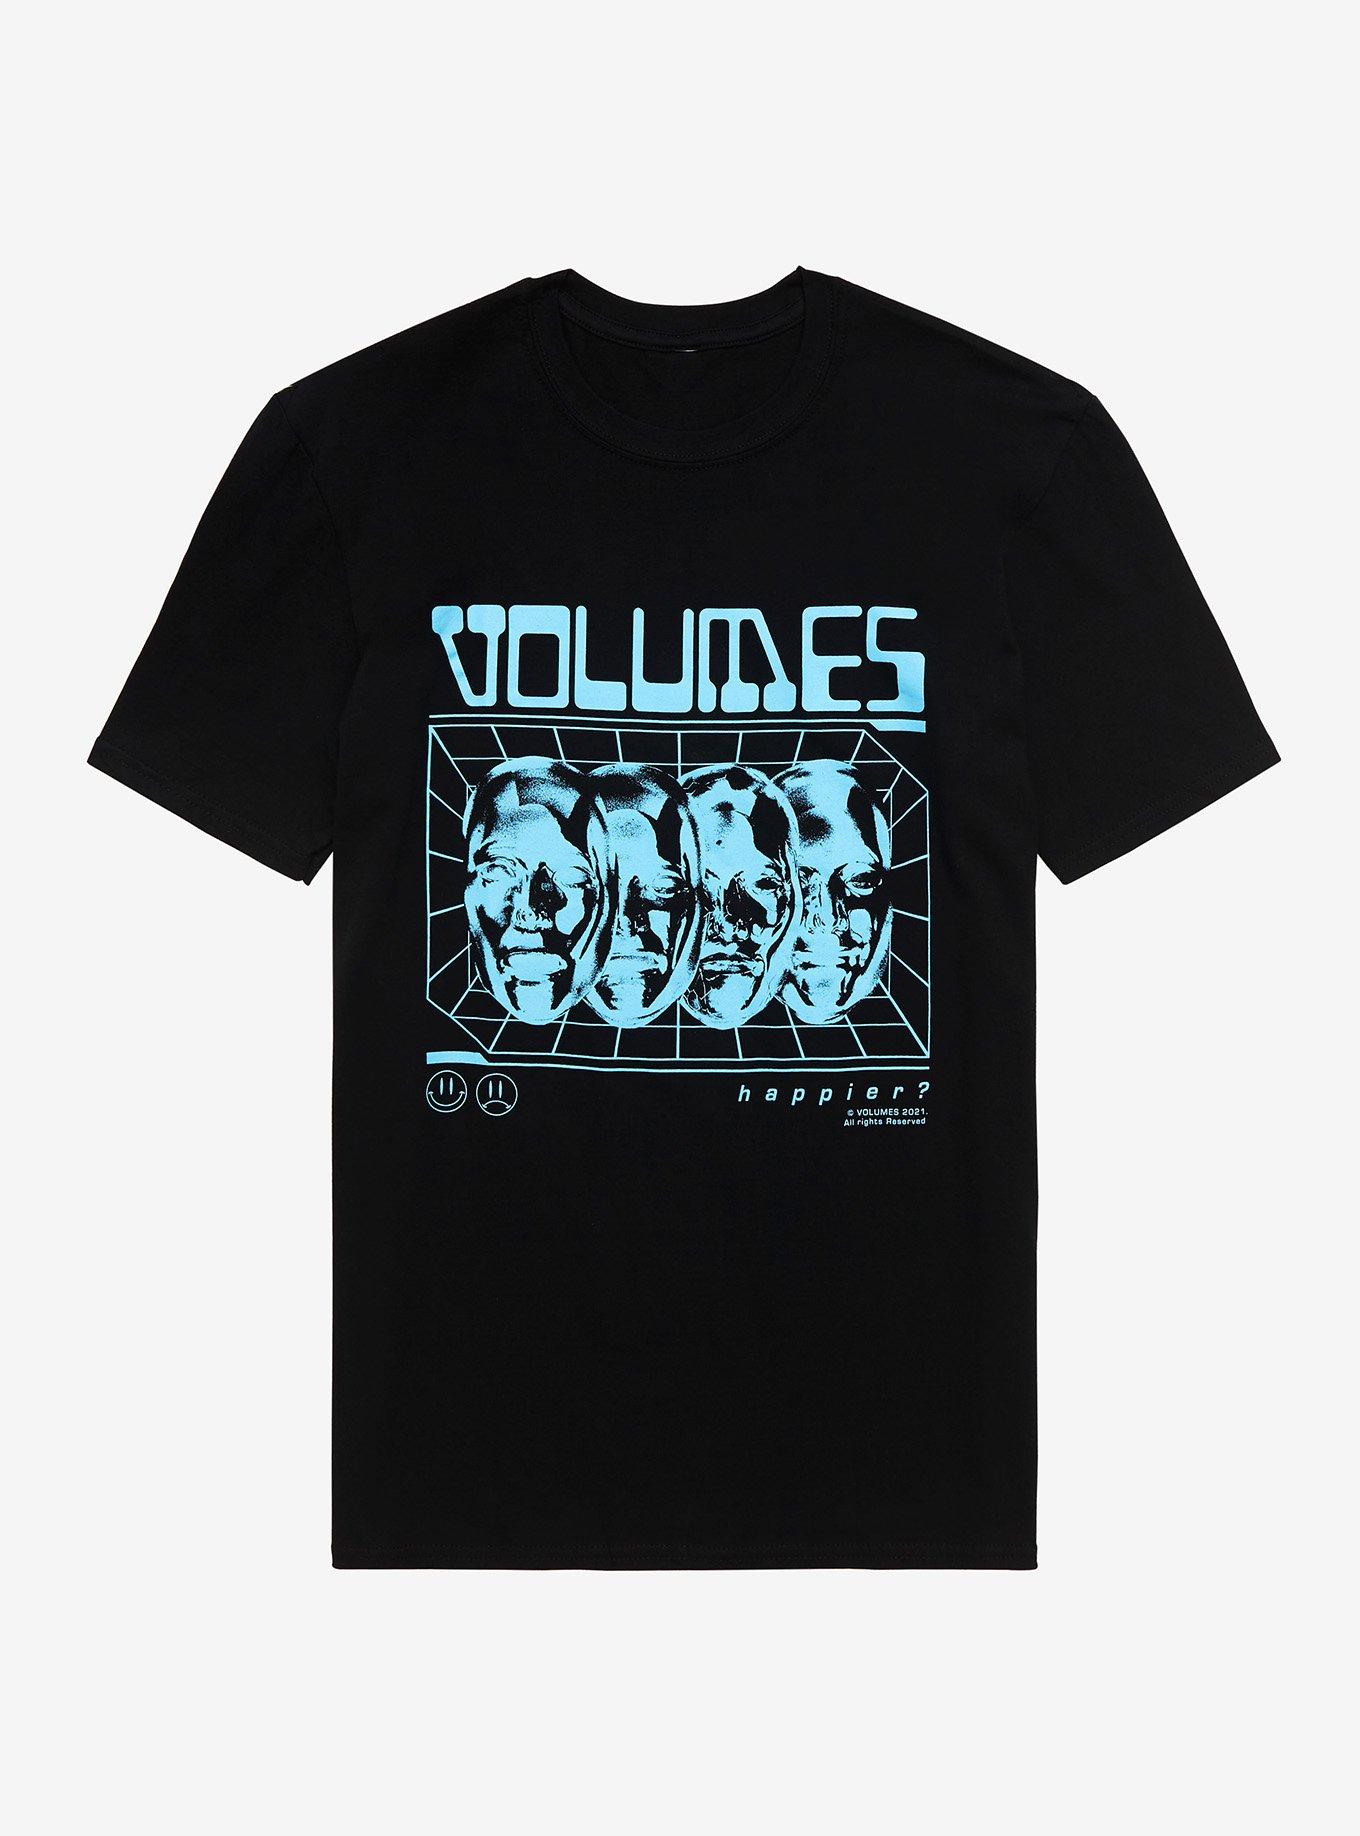 Volumes Happier? Faces T-Shirt, BLACK, hi-res